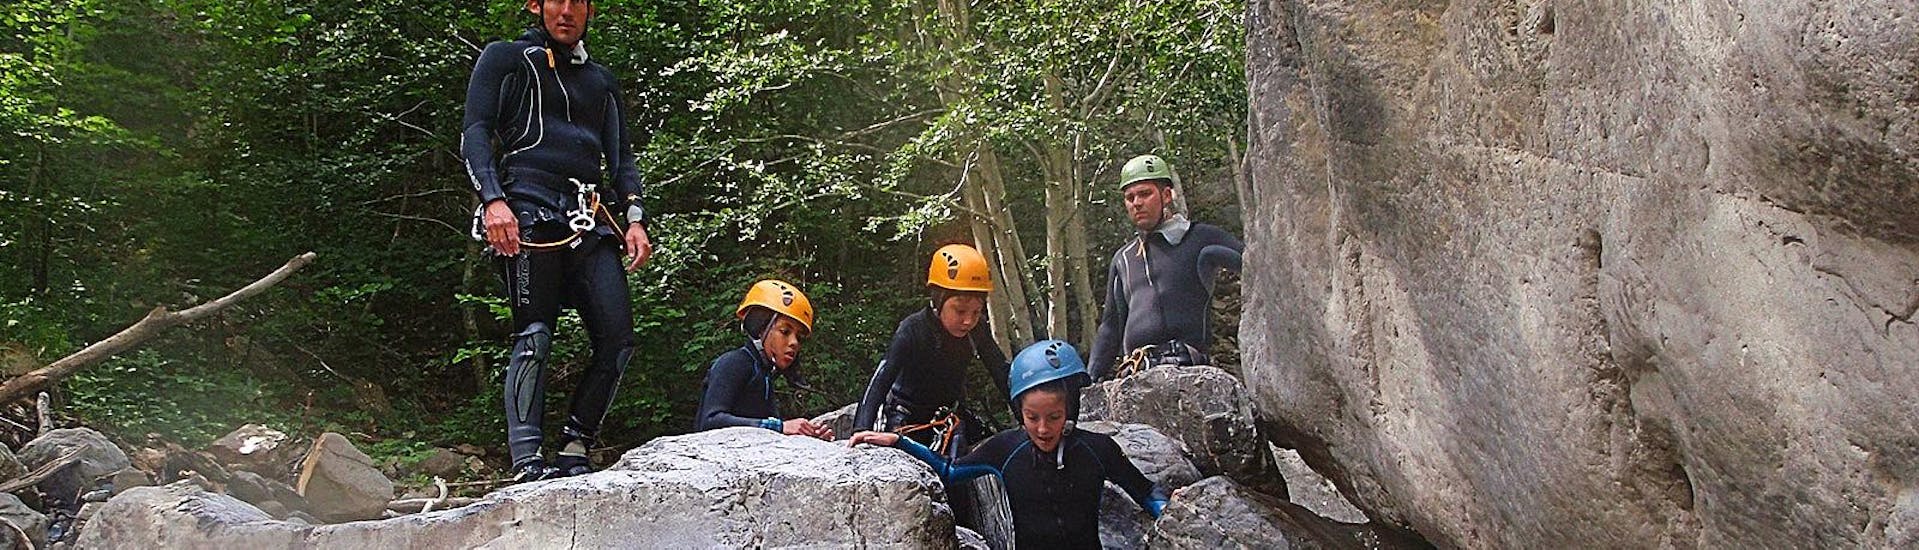 Un petit groupe de personnes découvrent l'activité de canyoning dans le canyon du Fournel avec Eaurigine.